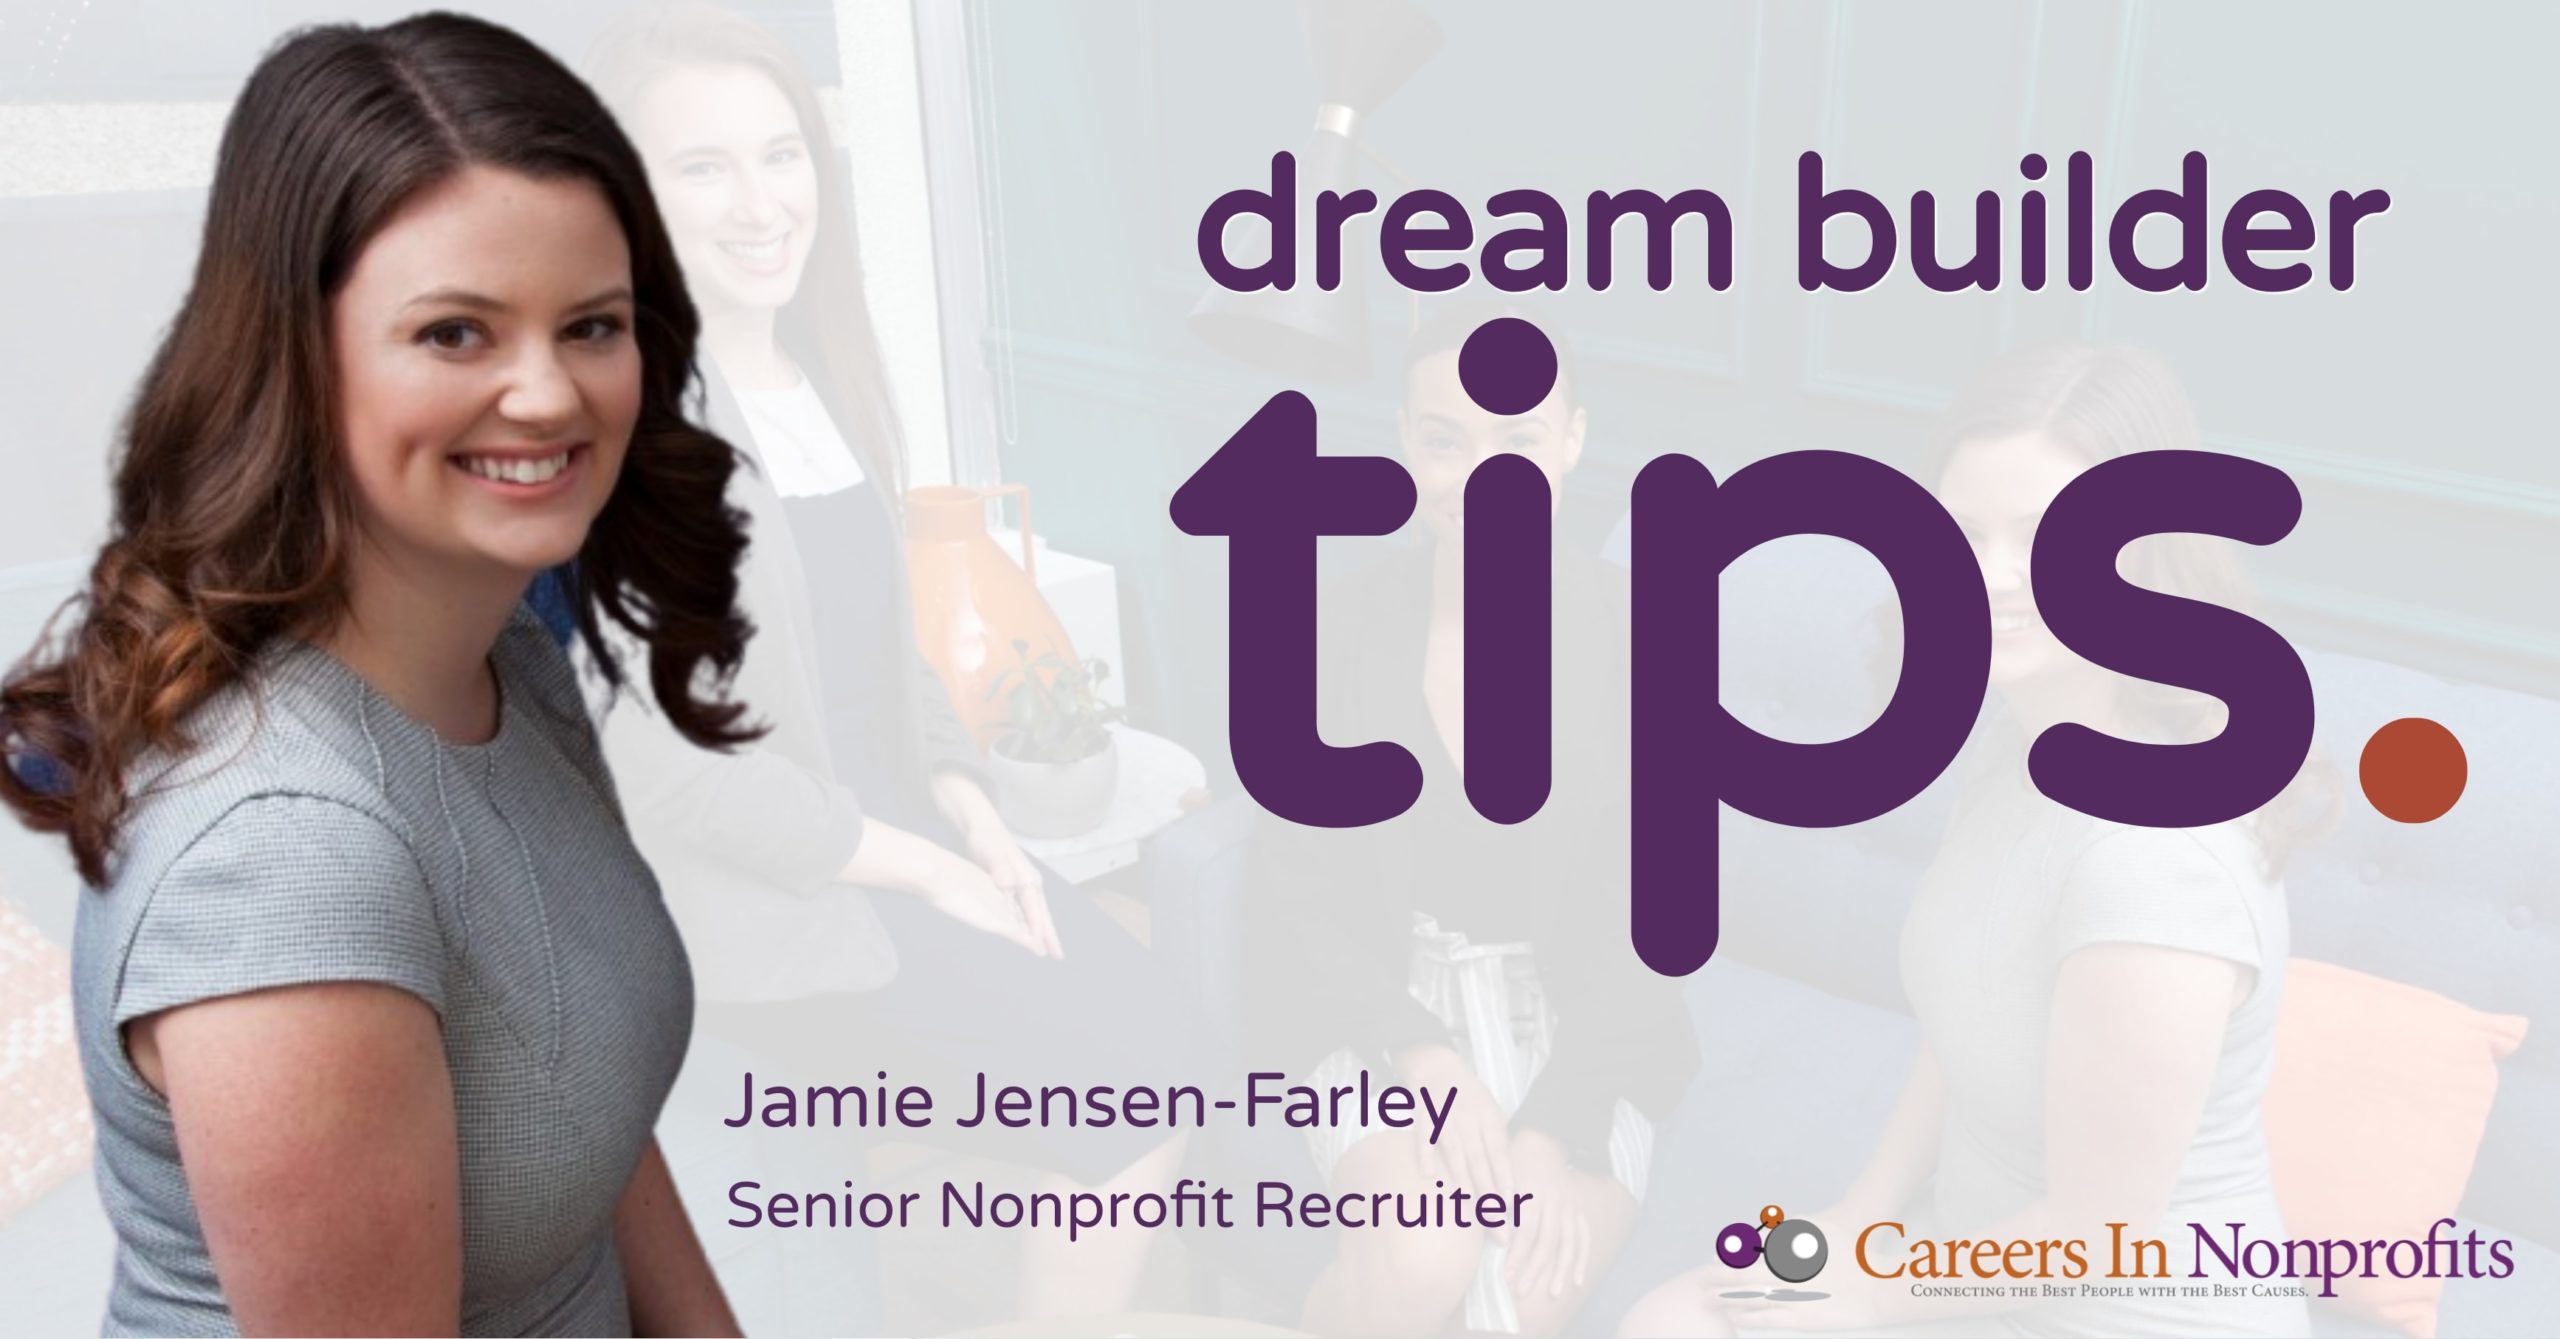 Dream Builder Tips with Jamie Jensen-Farley